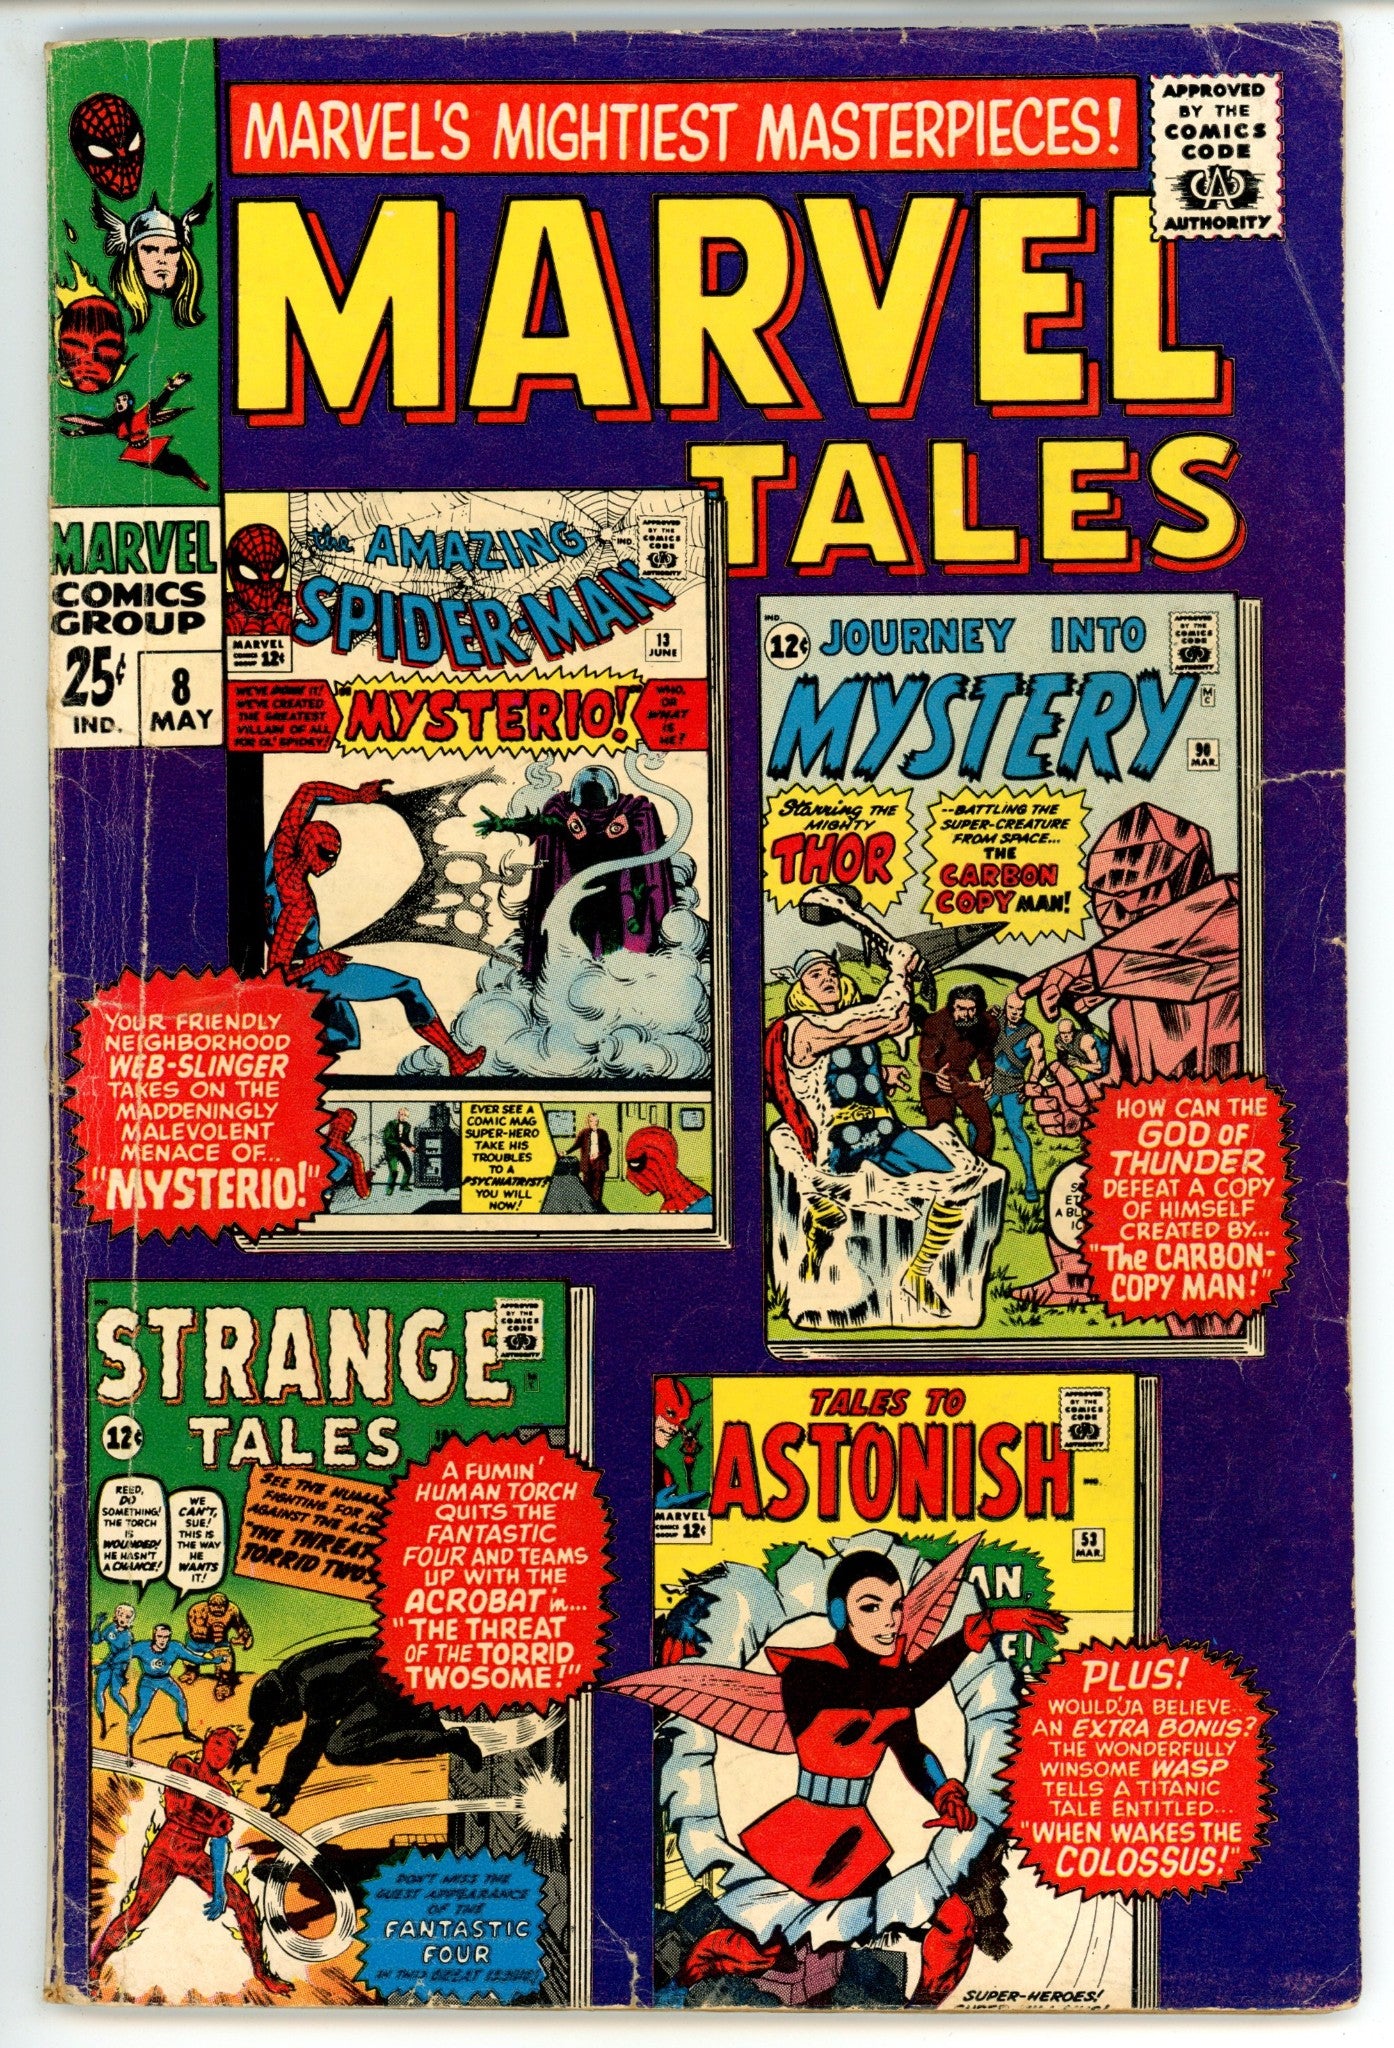 Marvel Tales Vol 2 8 VG (4.0) (1967) 